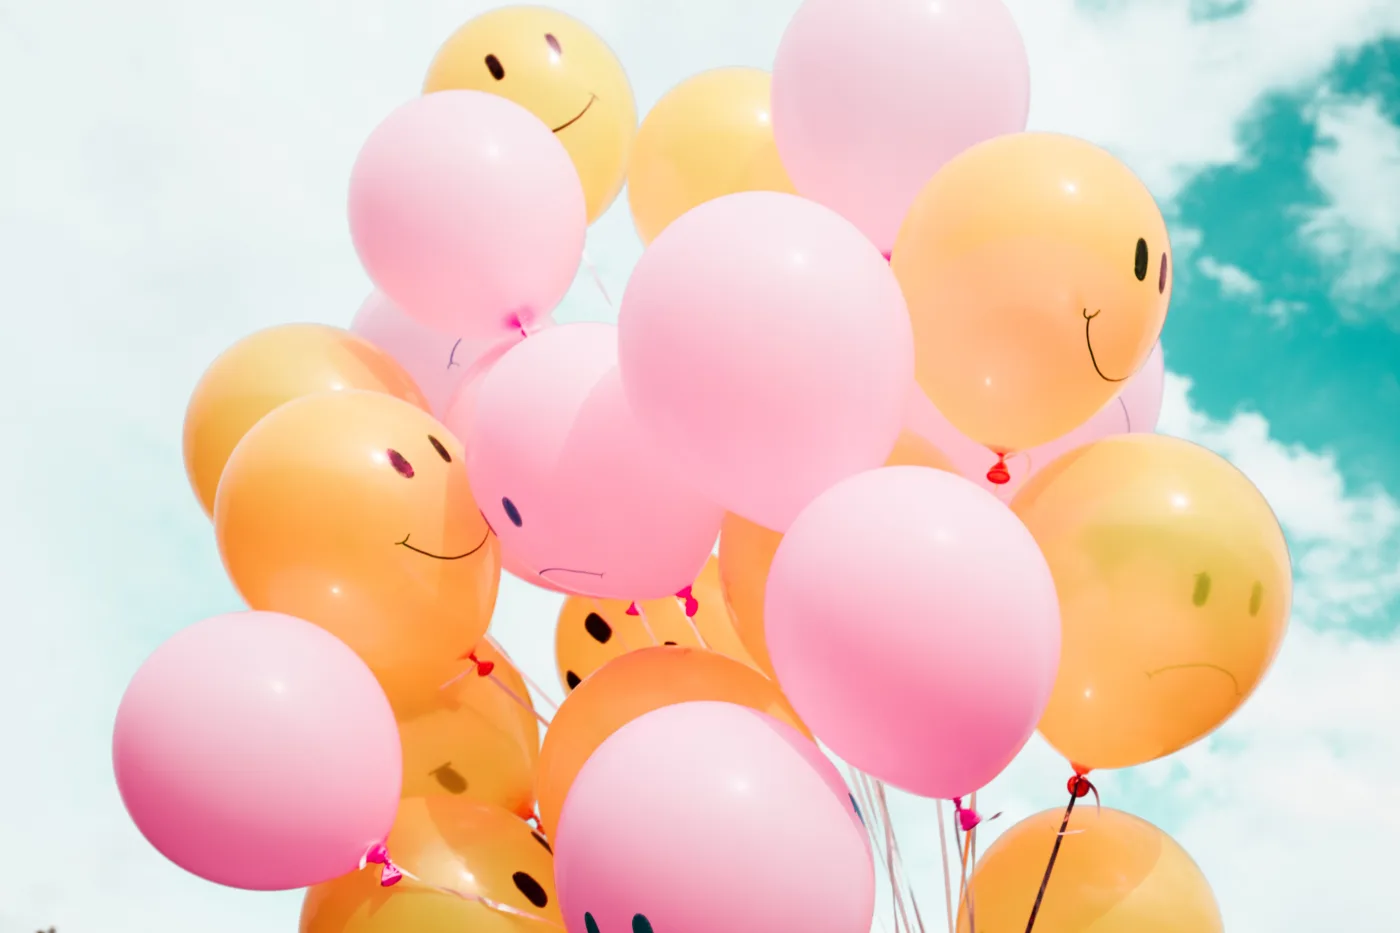 Lernmotivation – Ein Bündel von orangen und rosa Luftballons mit aufgemalten Gesichtern vor einem blauen Himmel mit Wolken.